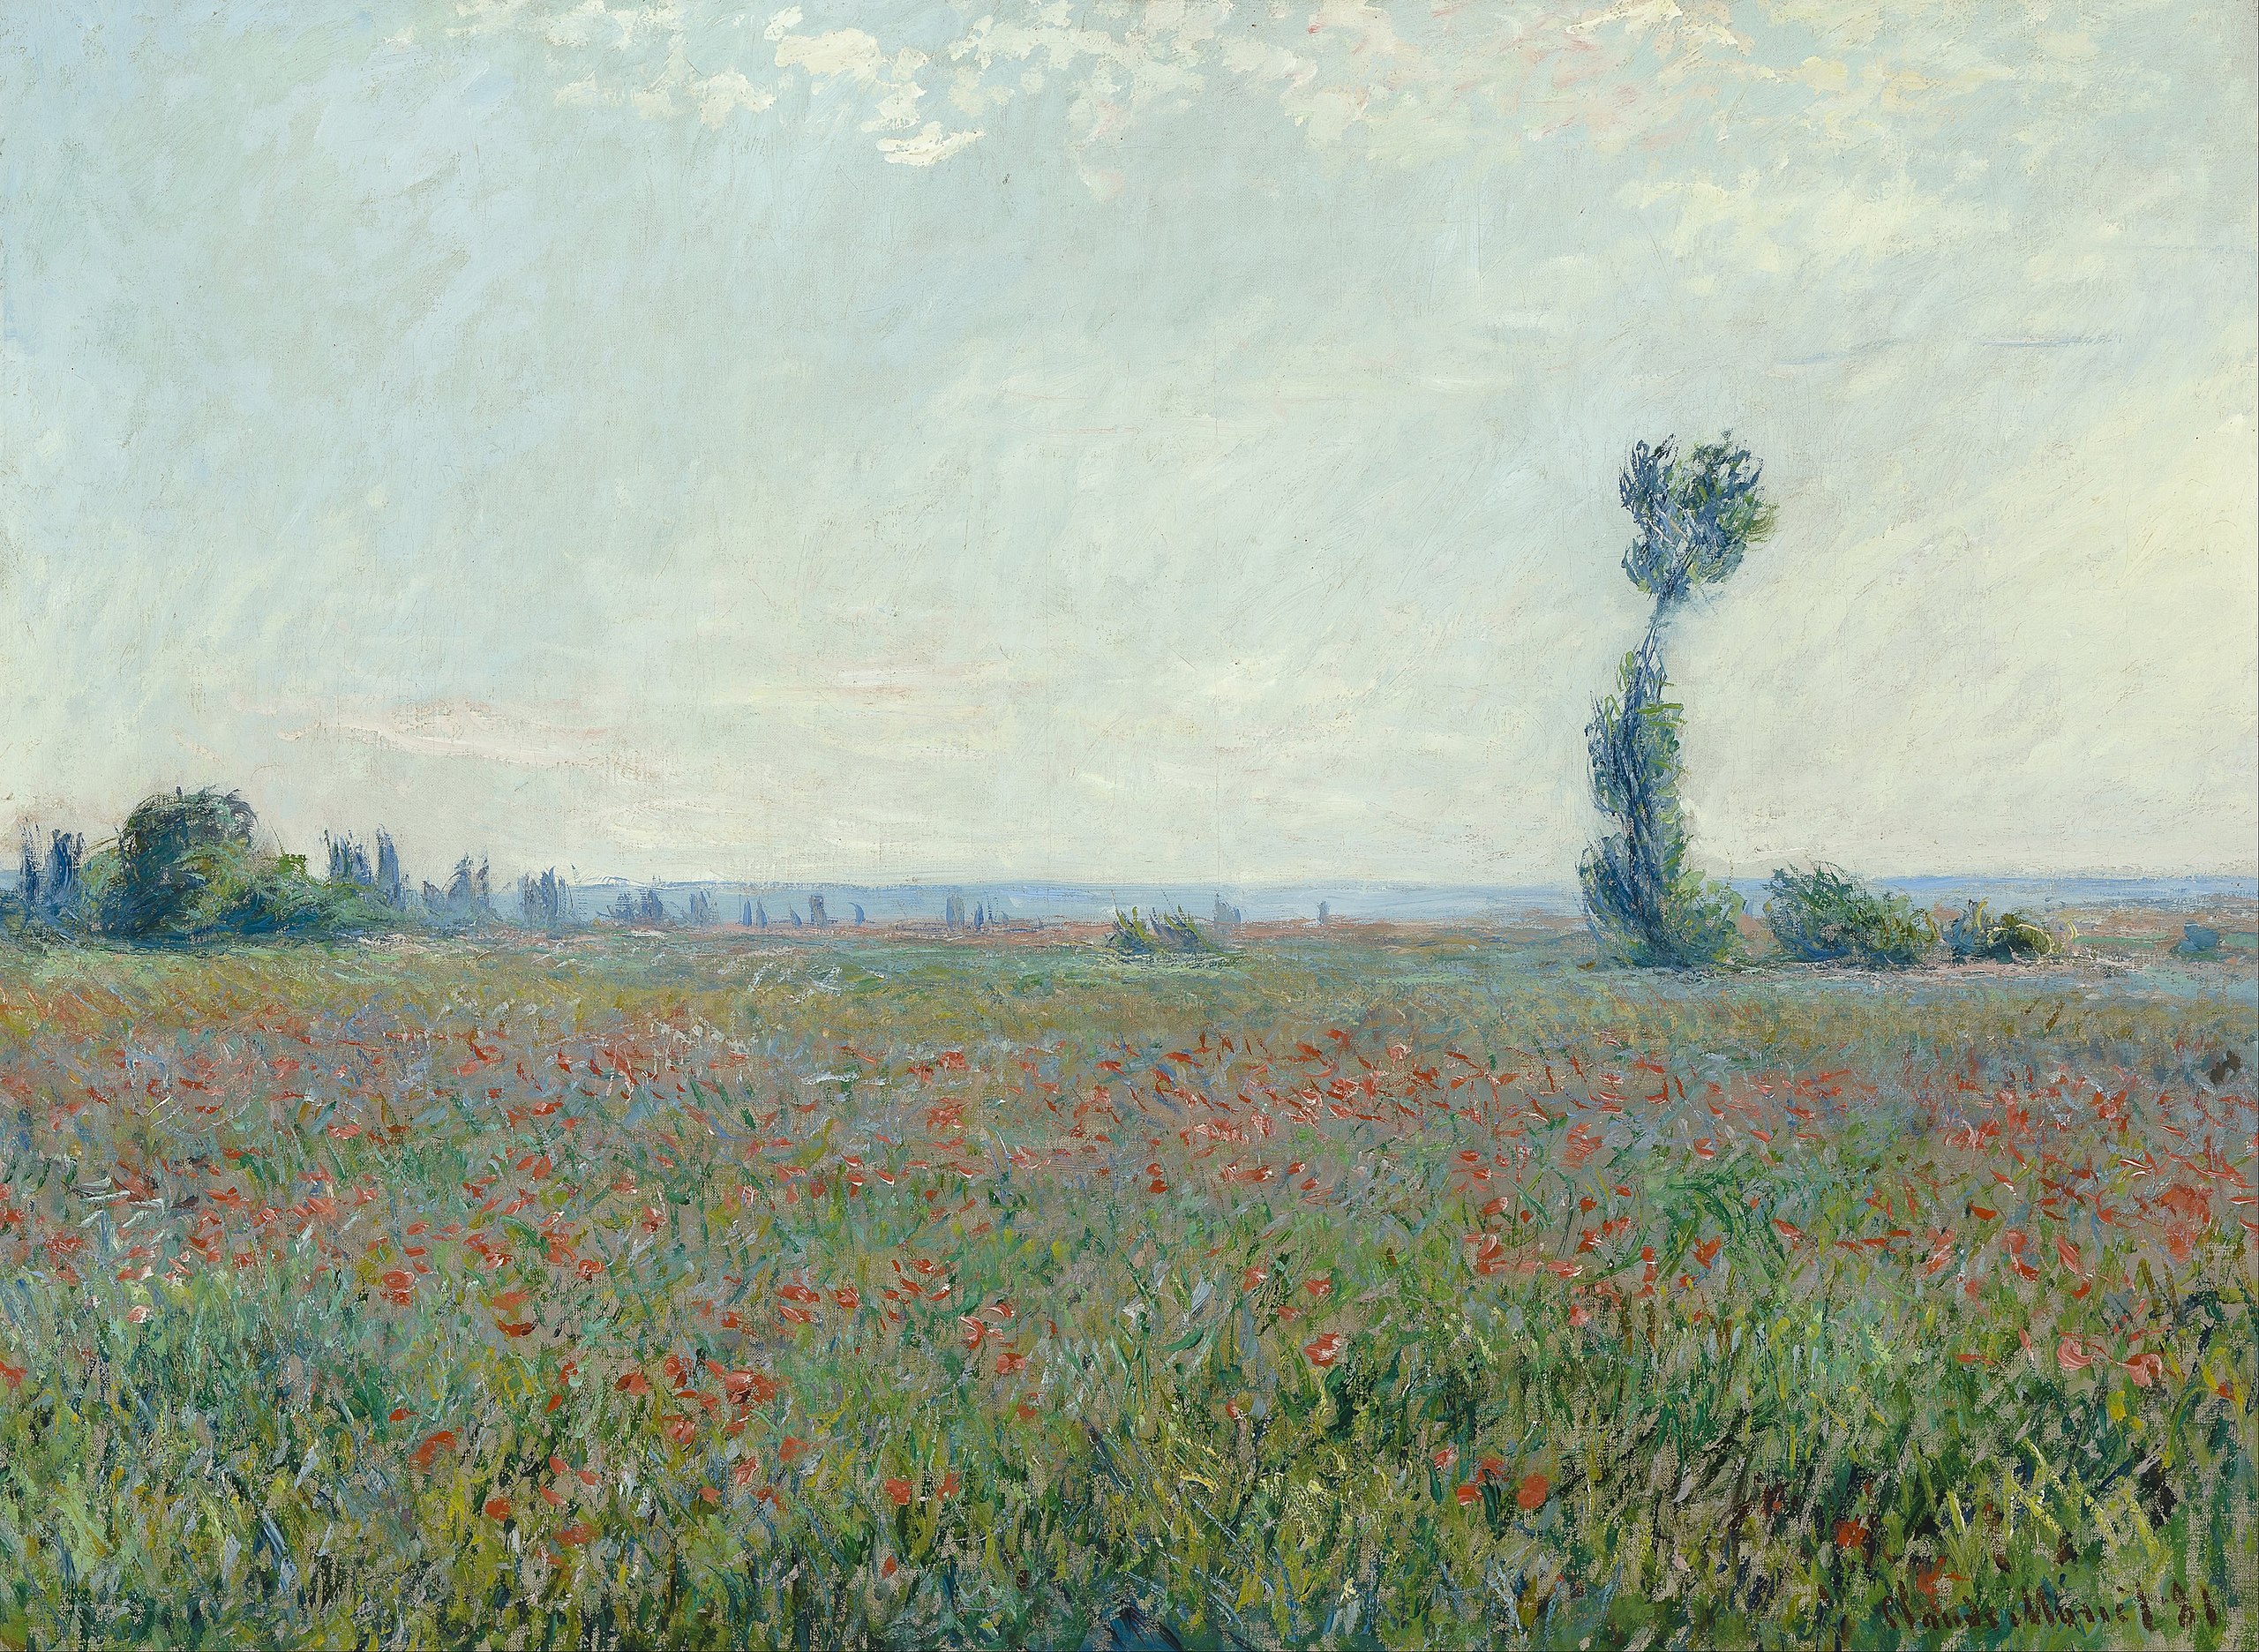 Маковое поле by Claude Monet - 1881 г. - 79 x 58 